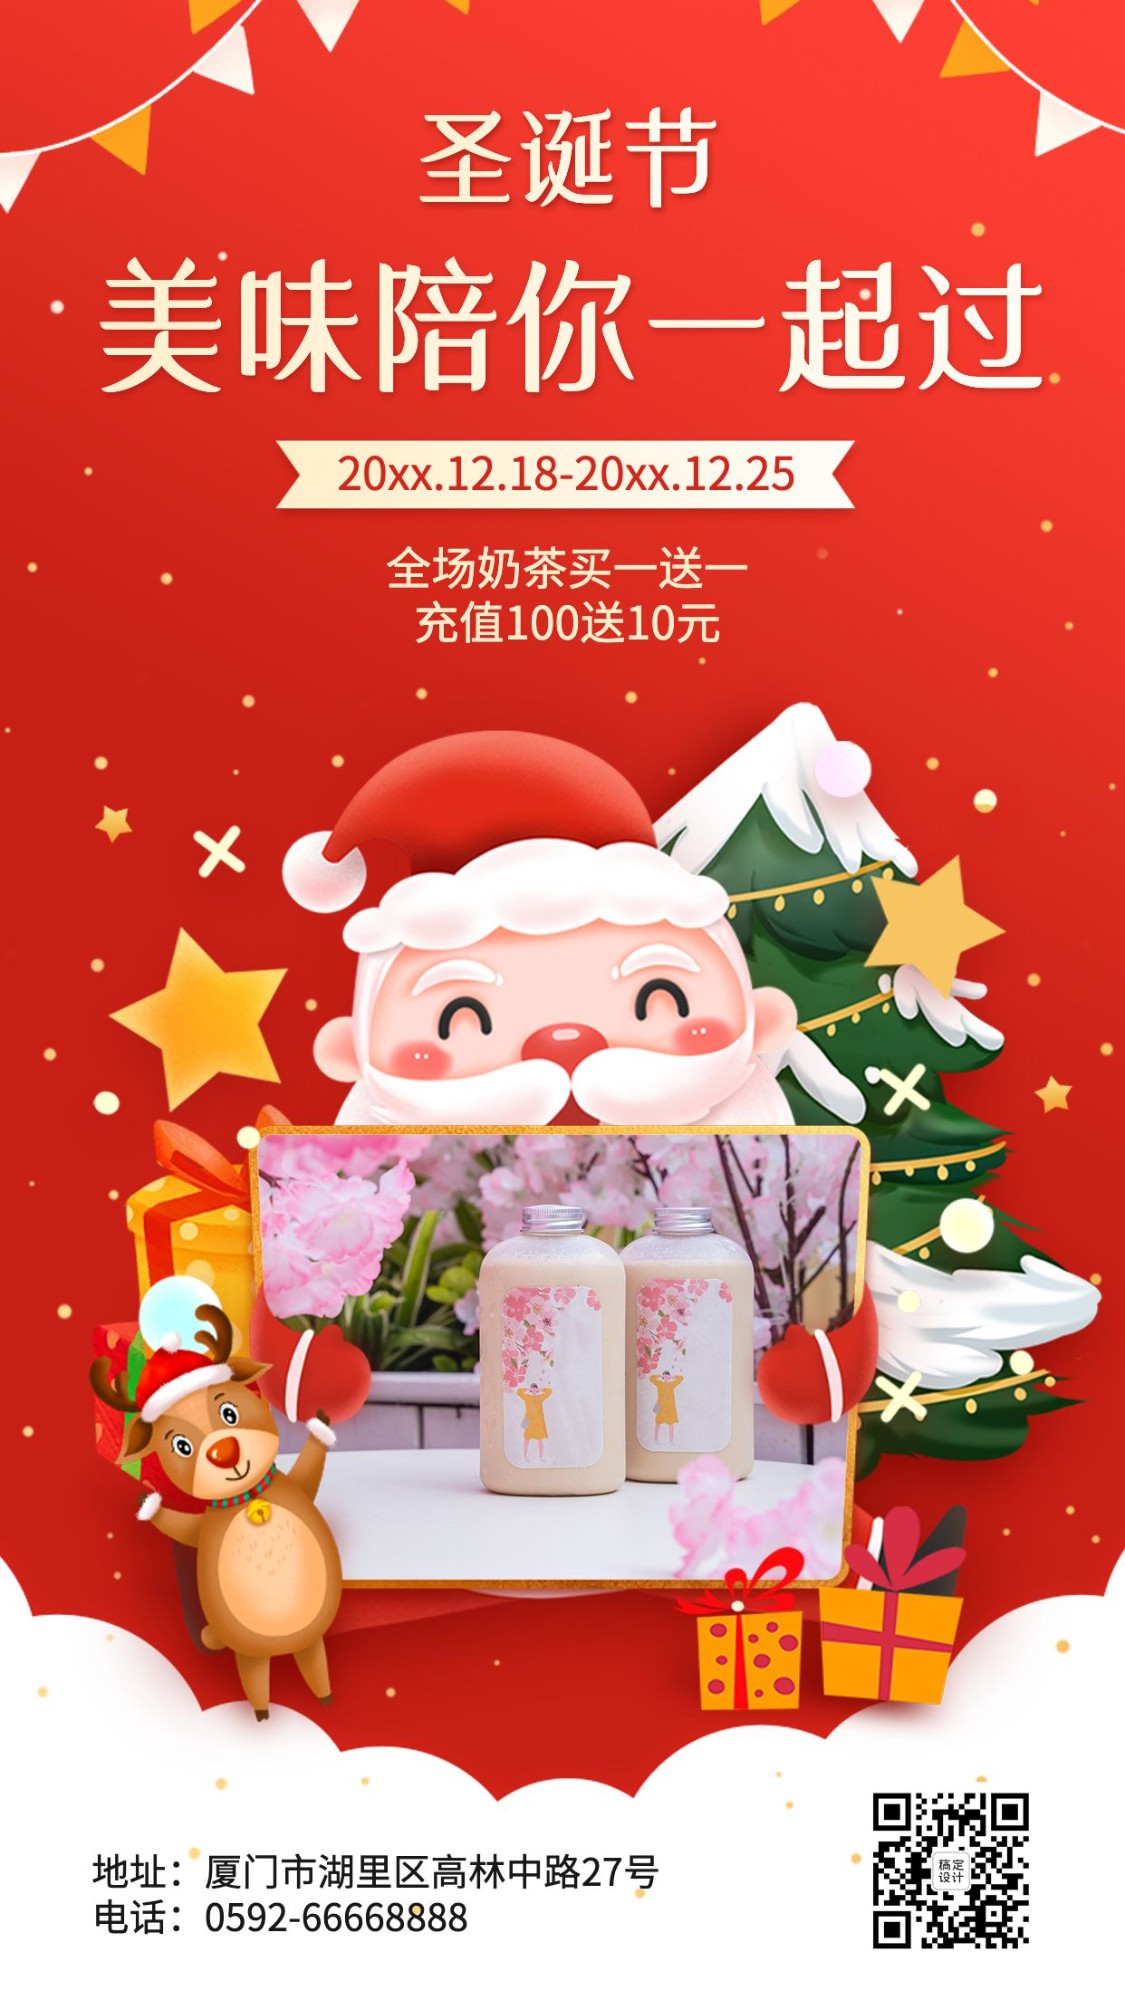 圣诞节奶茶饮品营销圣诞老人海报